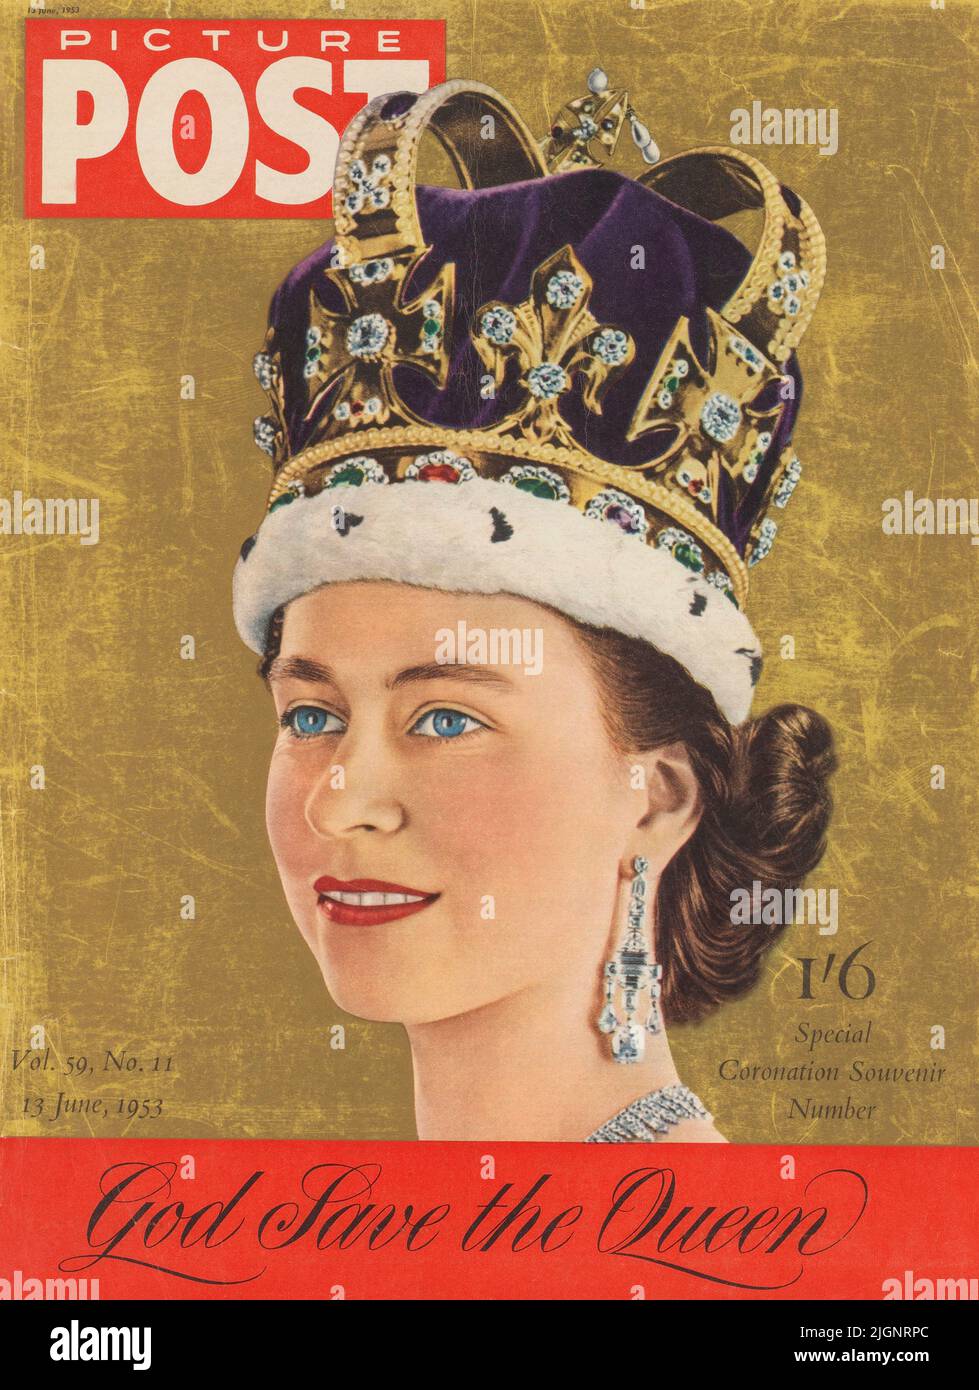 Spécial Coronation souvenir, juin 1953. Hommage rendu par le magazine Picture Post à la reine Elizabeth II (1926 - 2022) après son couronnement. ÉDITORIAL UNIQUEMENT. Banque D'Images